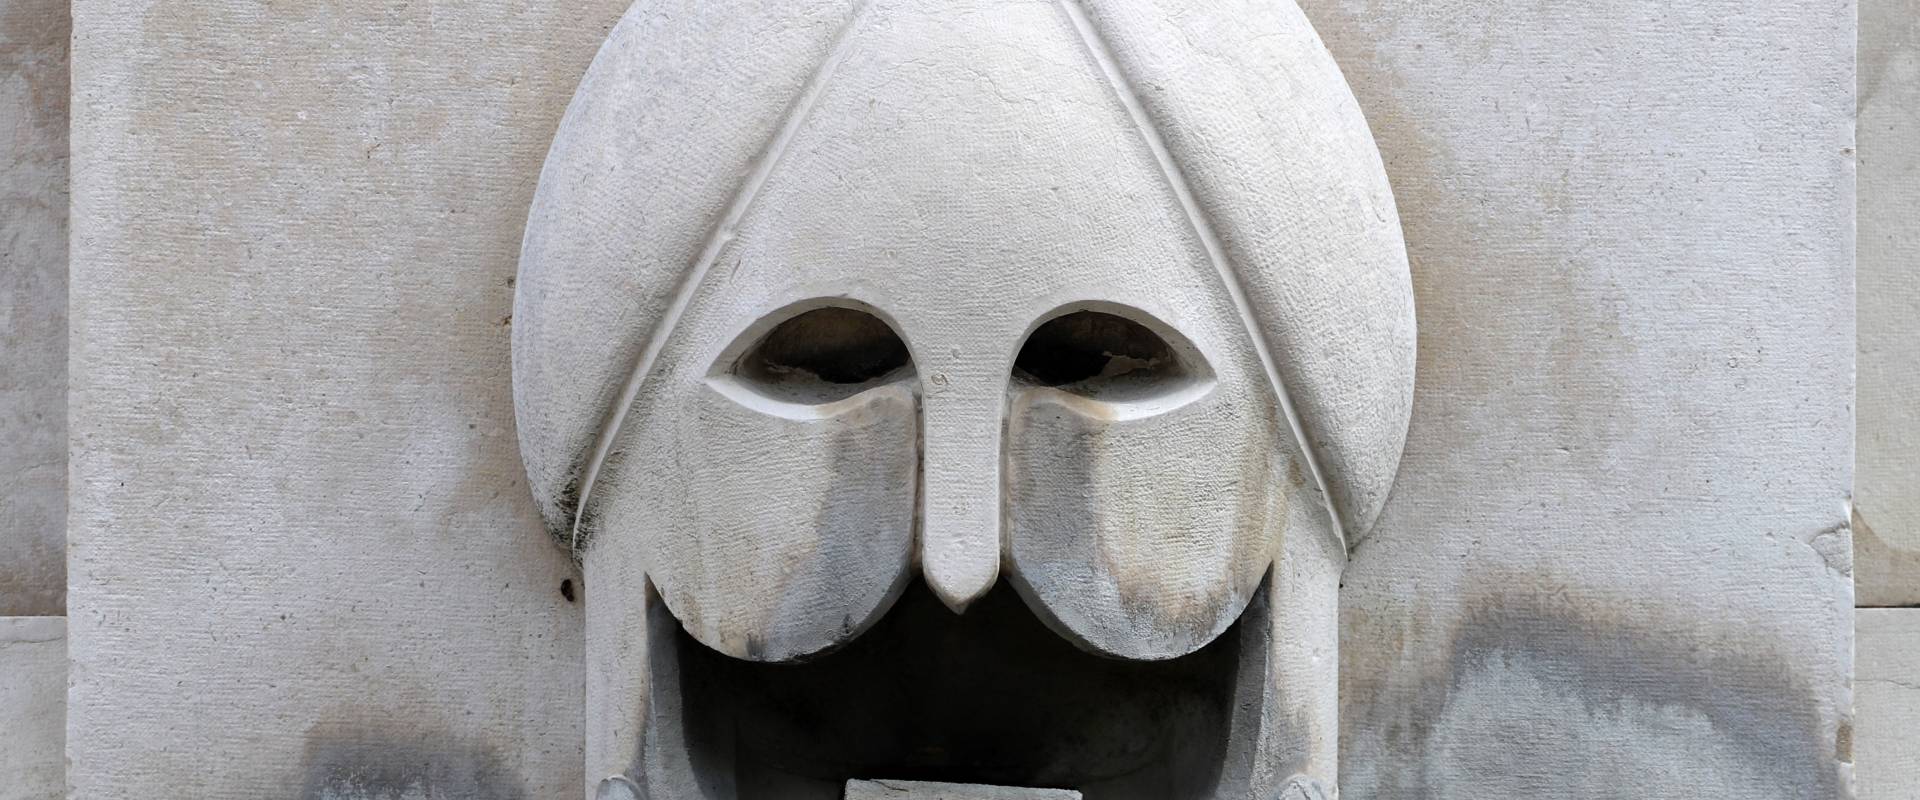 Cesare bazzani, munumento alla vittoria (o ai caduti) di forlì, 1932, fontane laterali con mascheroni 02 foto di Sailko